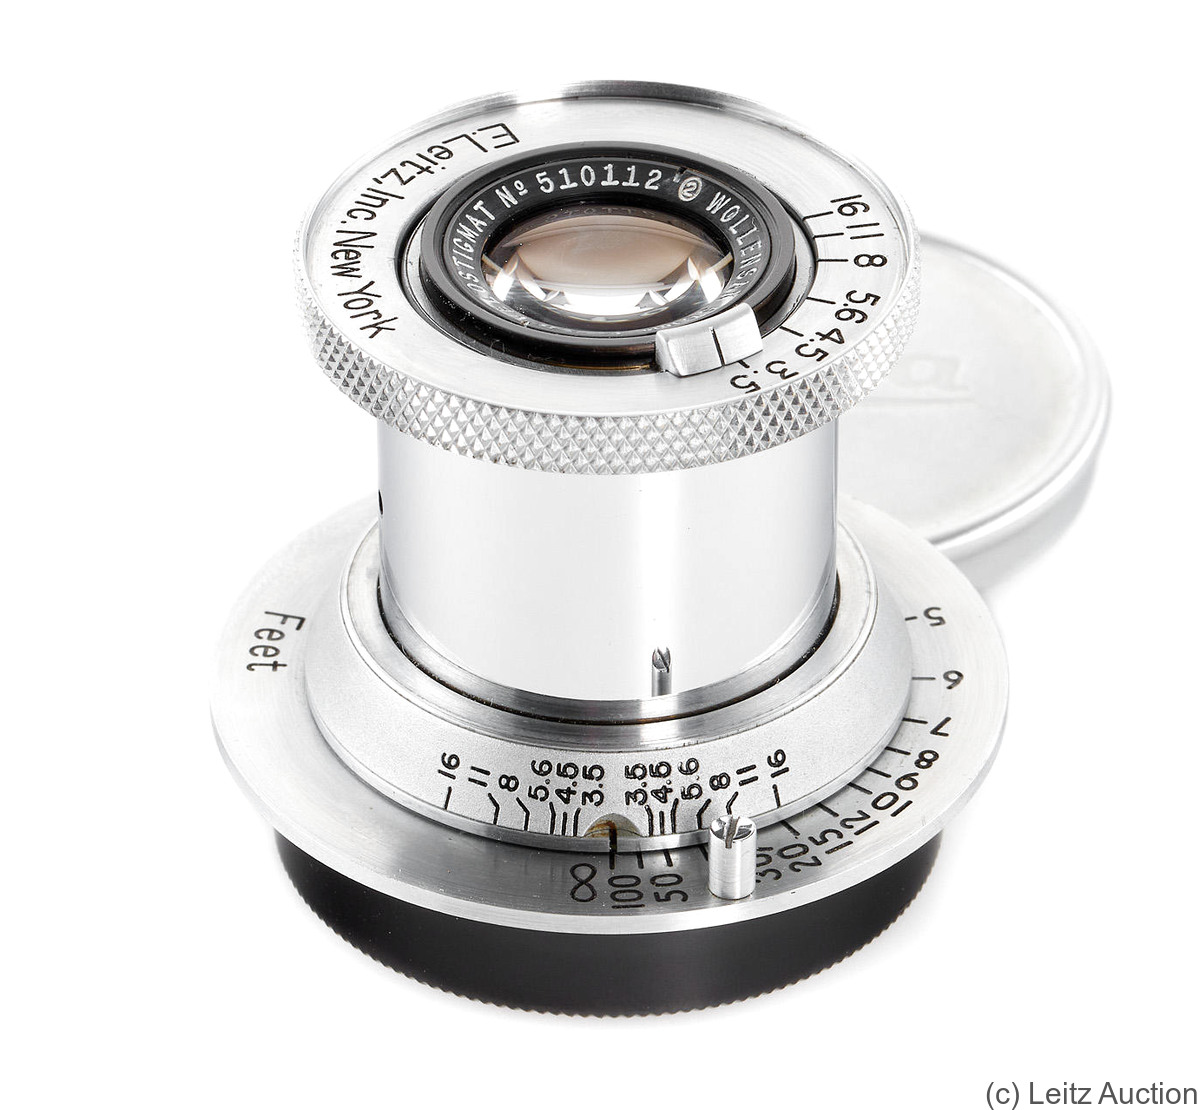 Leitz: 50mm (5cm) f3.5 Wollensak Velostigmat (SM) camera